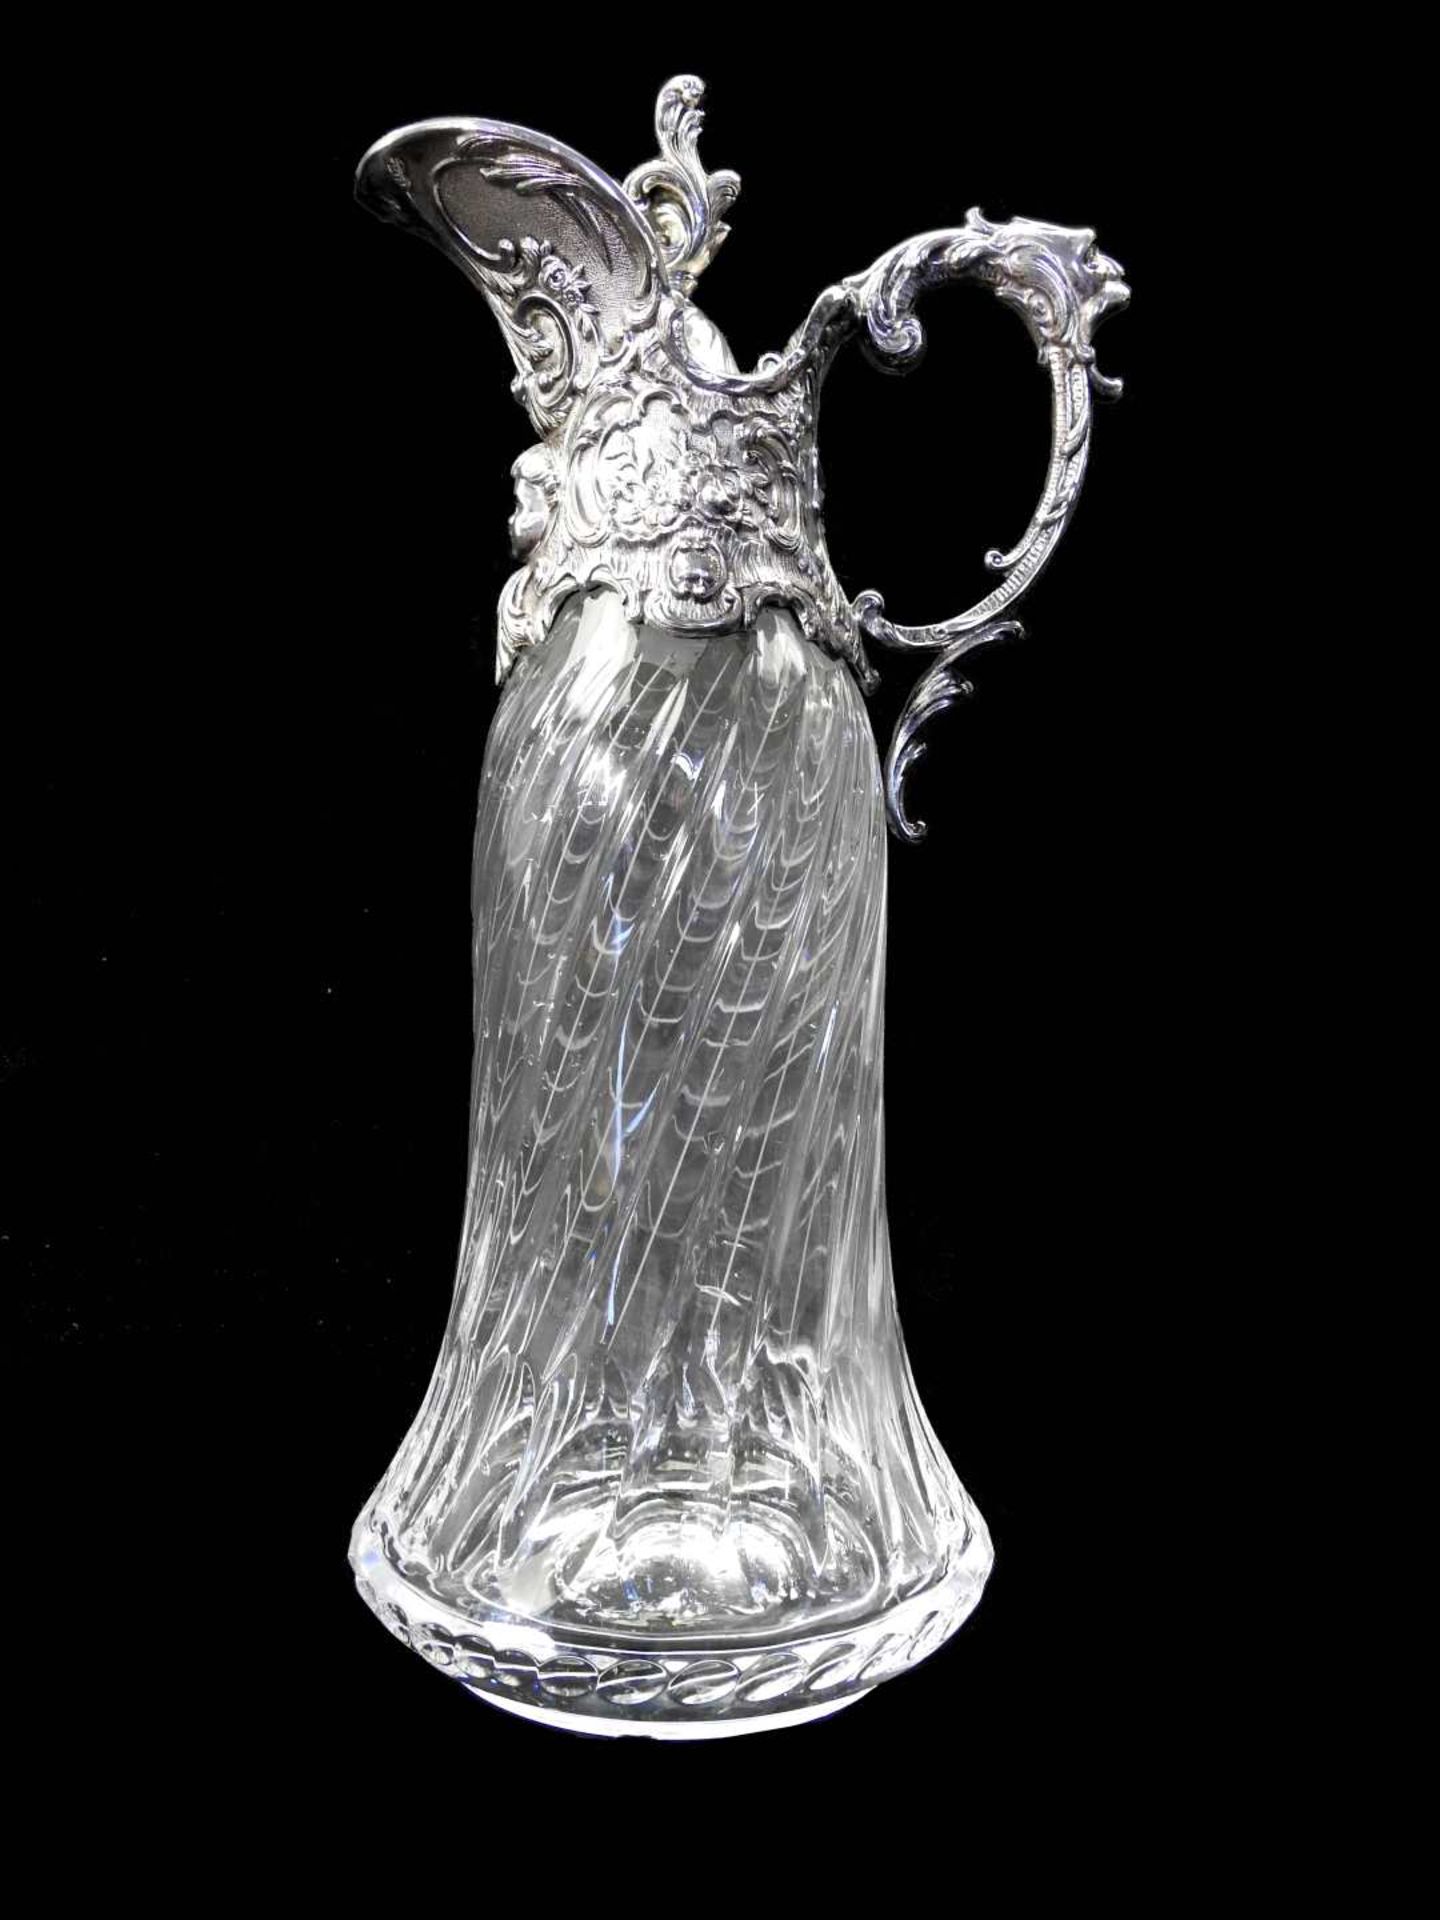 Geschwungene Glaskaraffe Glas, farblos mit leicht gedrehtem Schliffdekor. Silbermontur